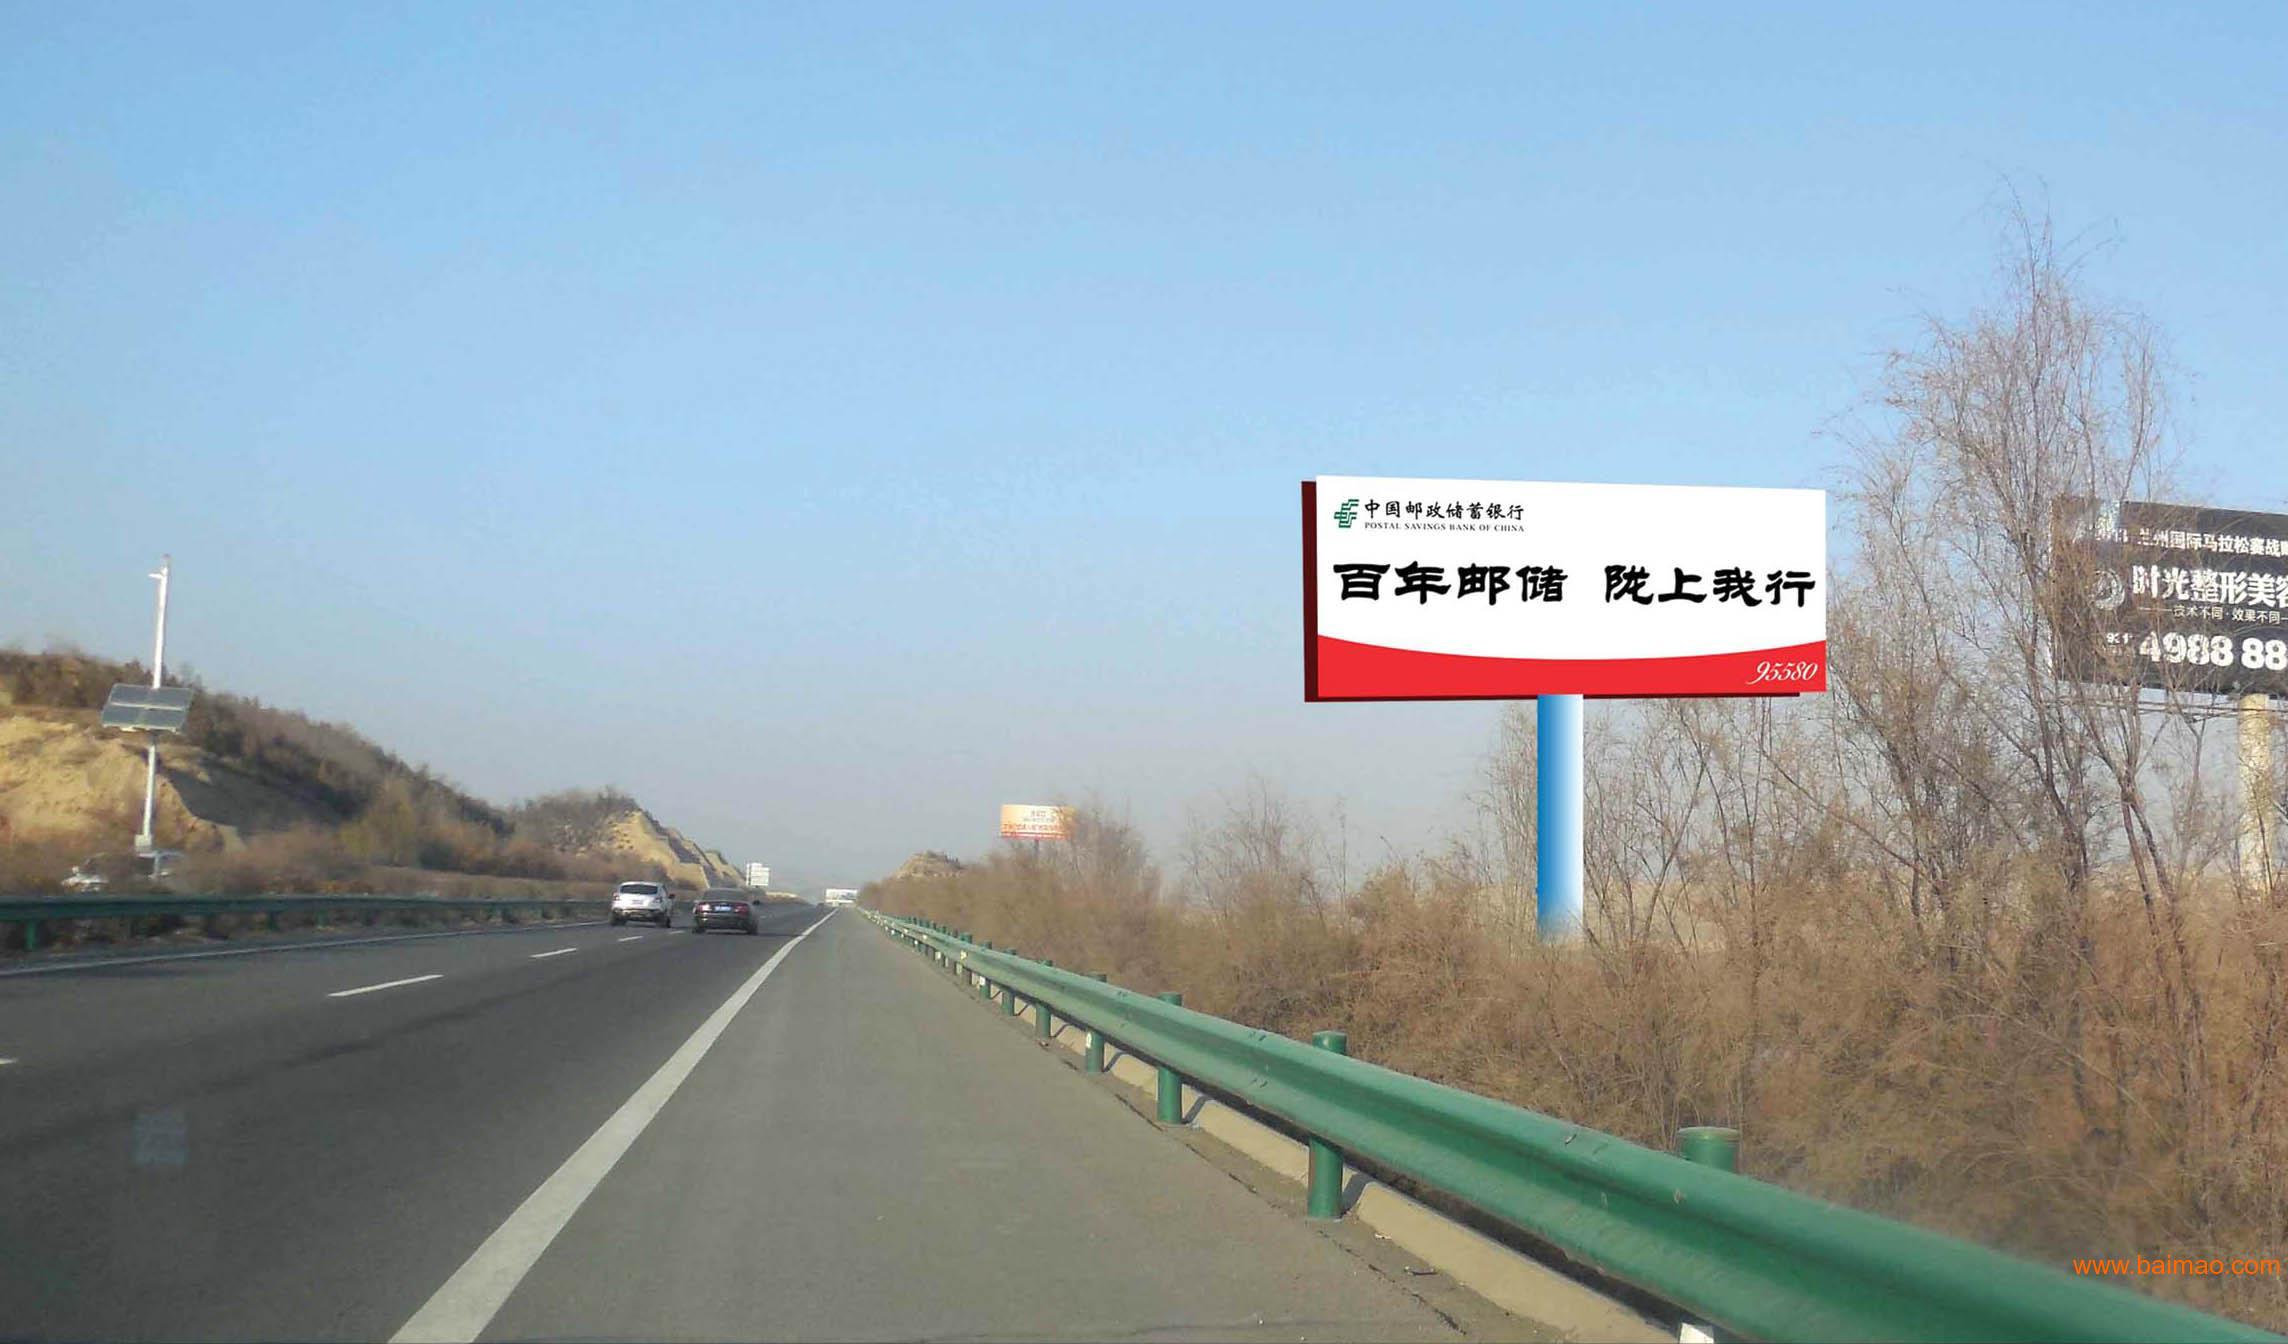 S5502忻州绕城高速标识牌补充 - 哔哩哔哩